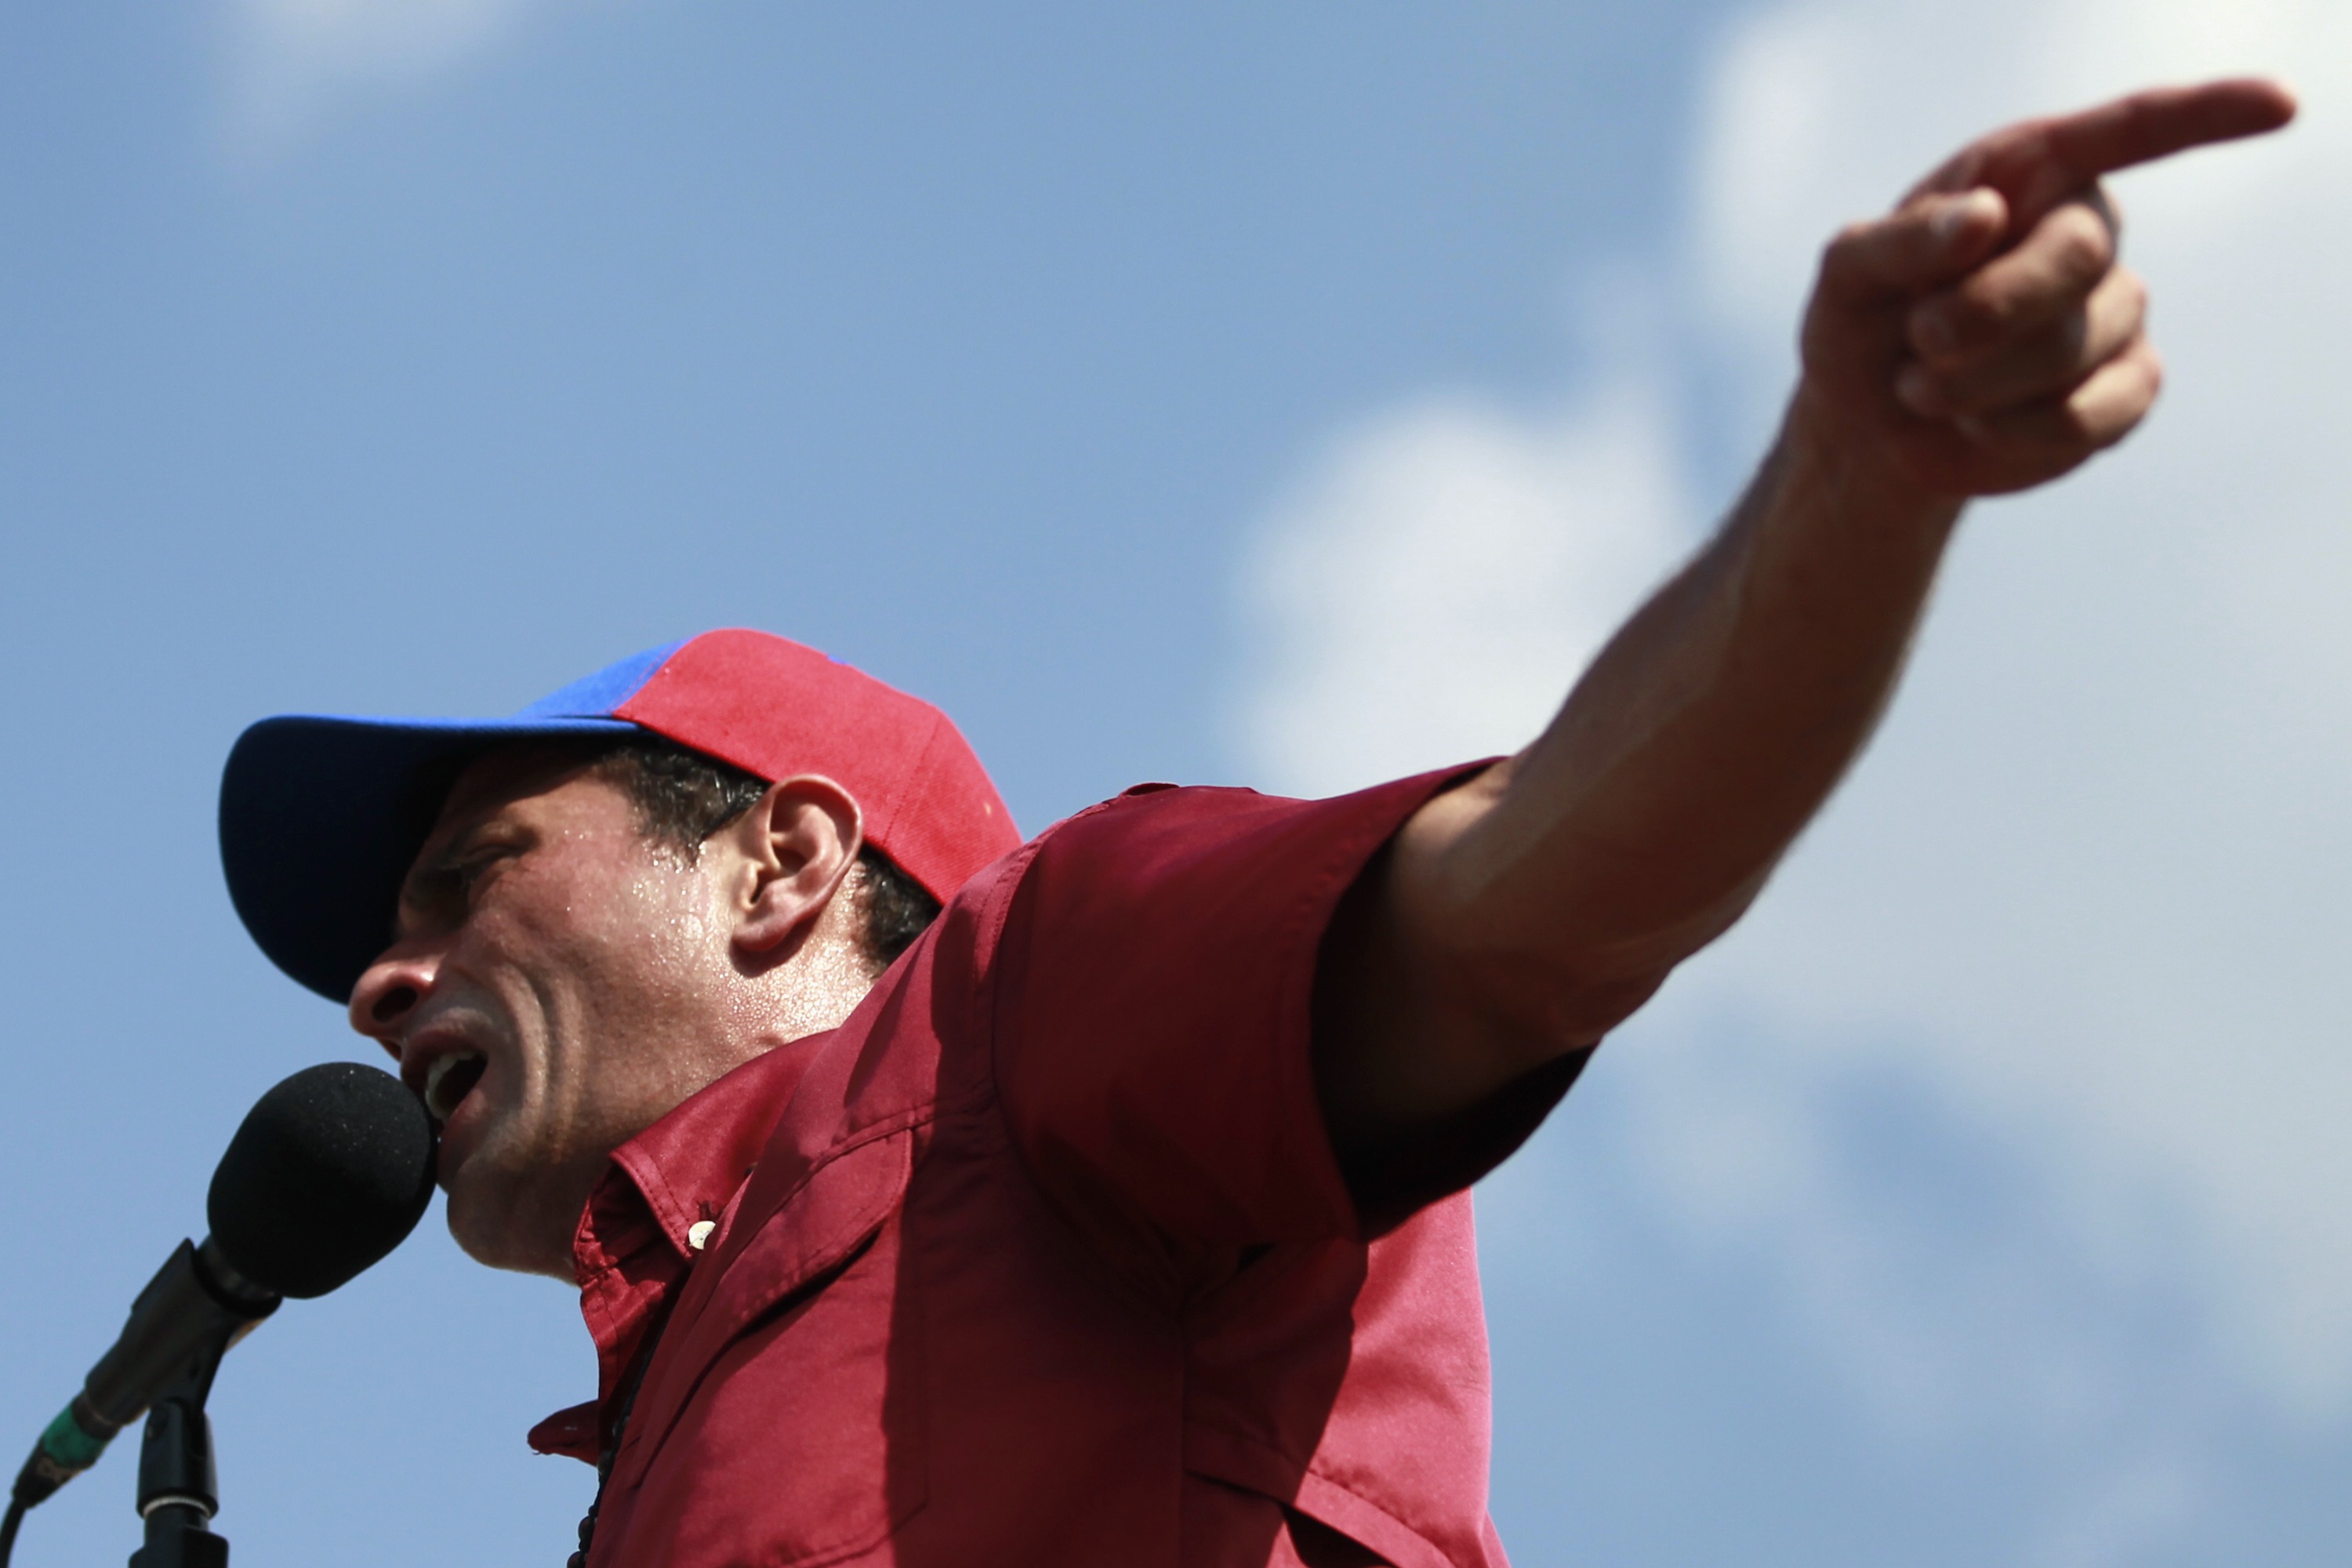 La candidatura oficialista “se desplomó” y “va en caída”, afirmó @hcapriles